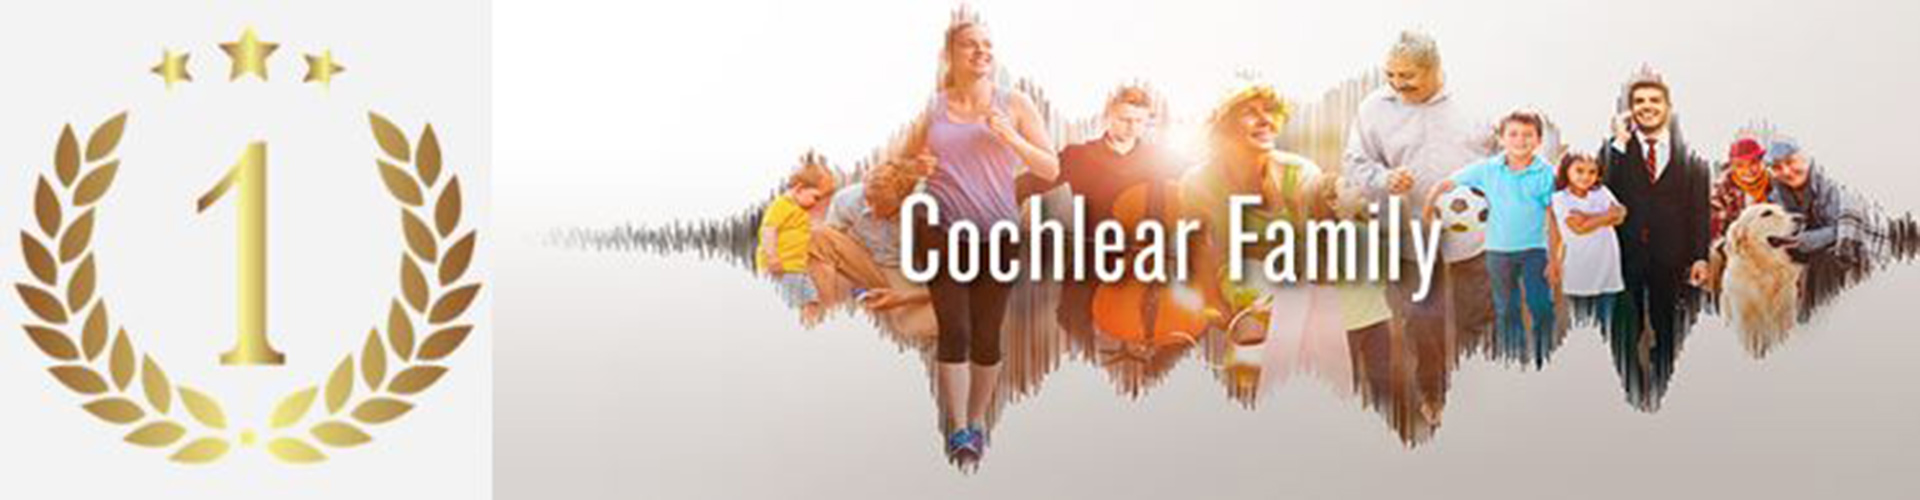 Gewinnspiel – Die Cochlear Family überbrückt Grenzen